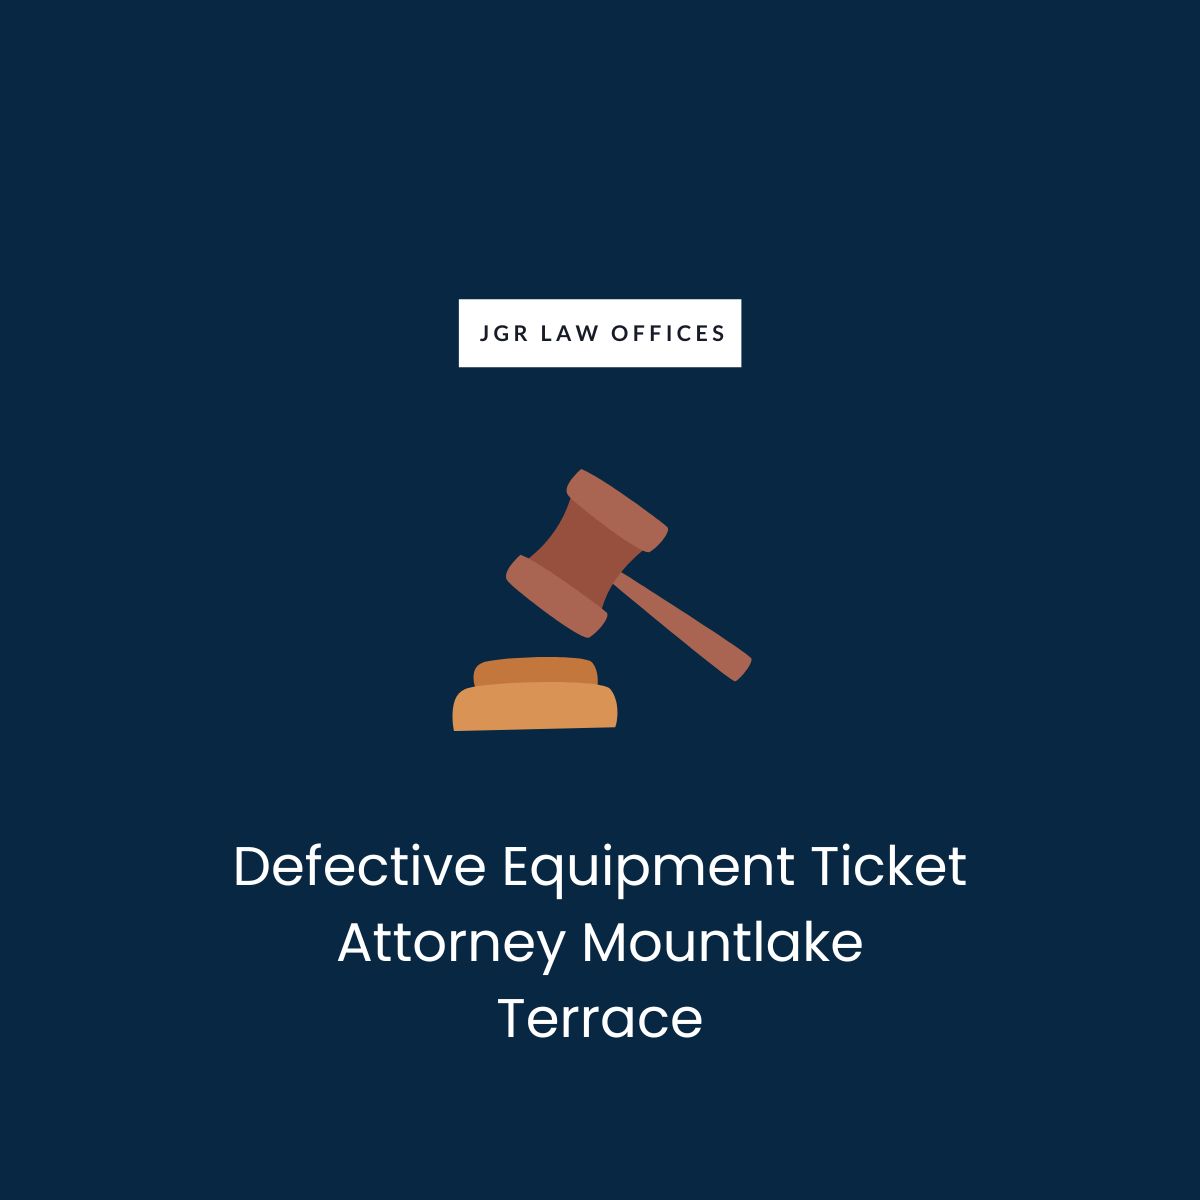 Defective Equipment Ticket Attorney Mountlake Terrace